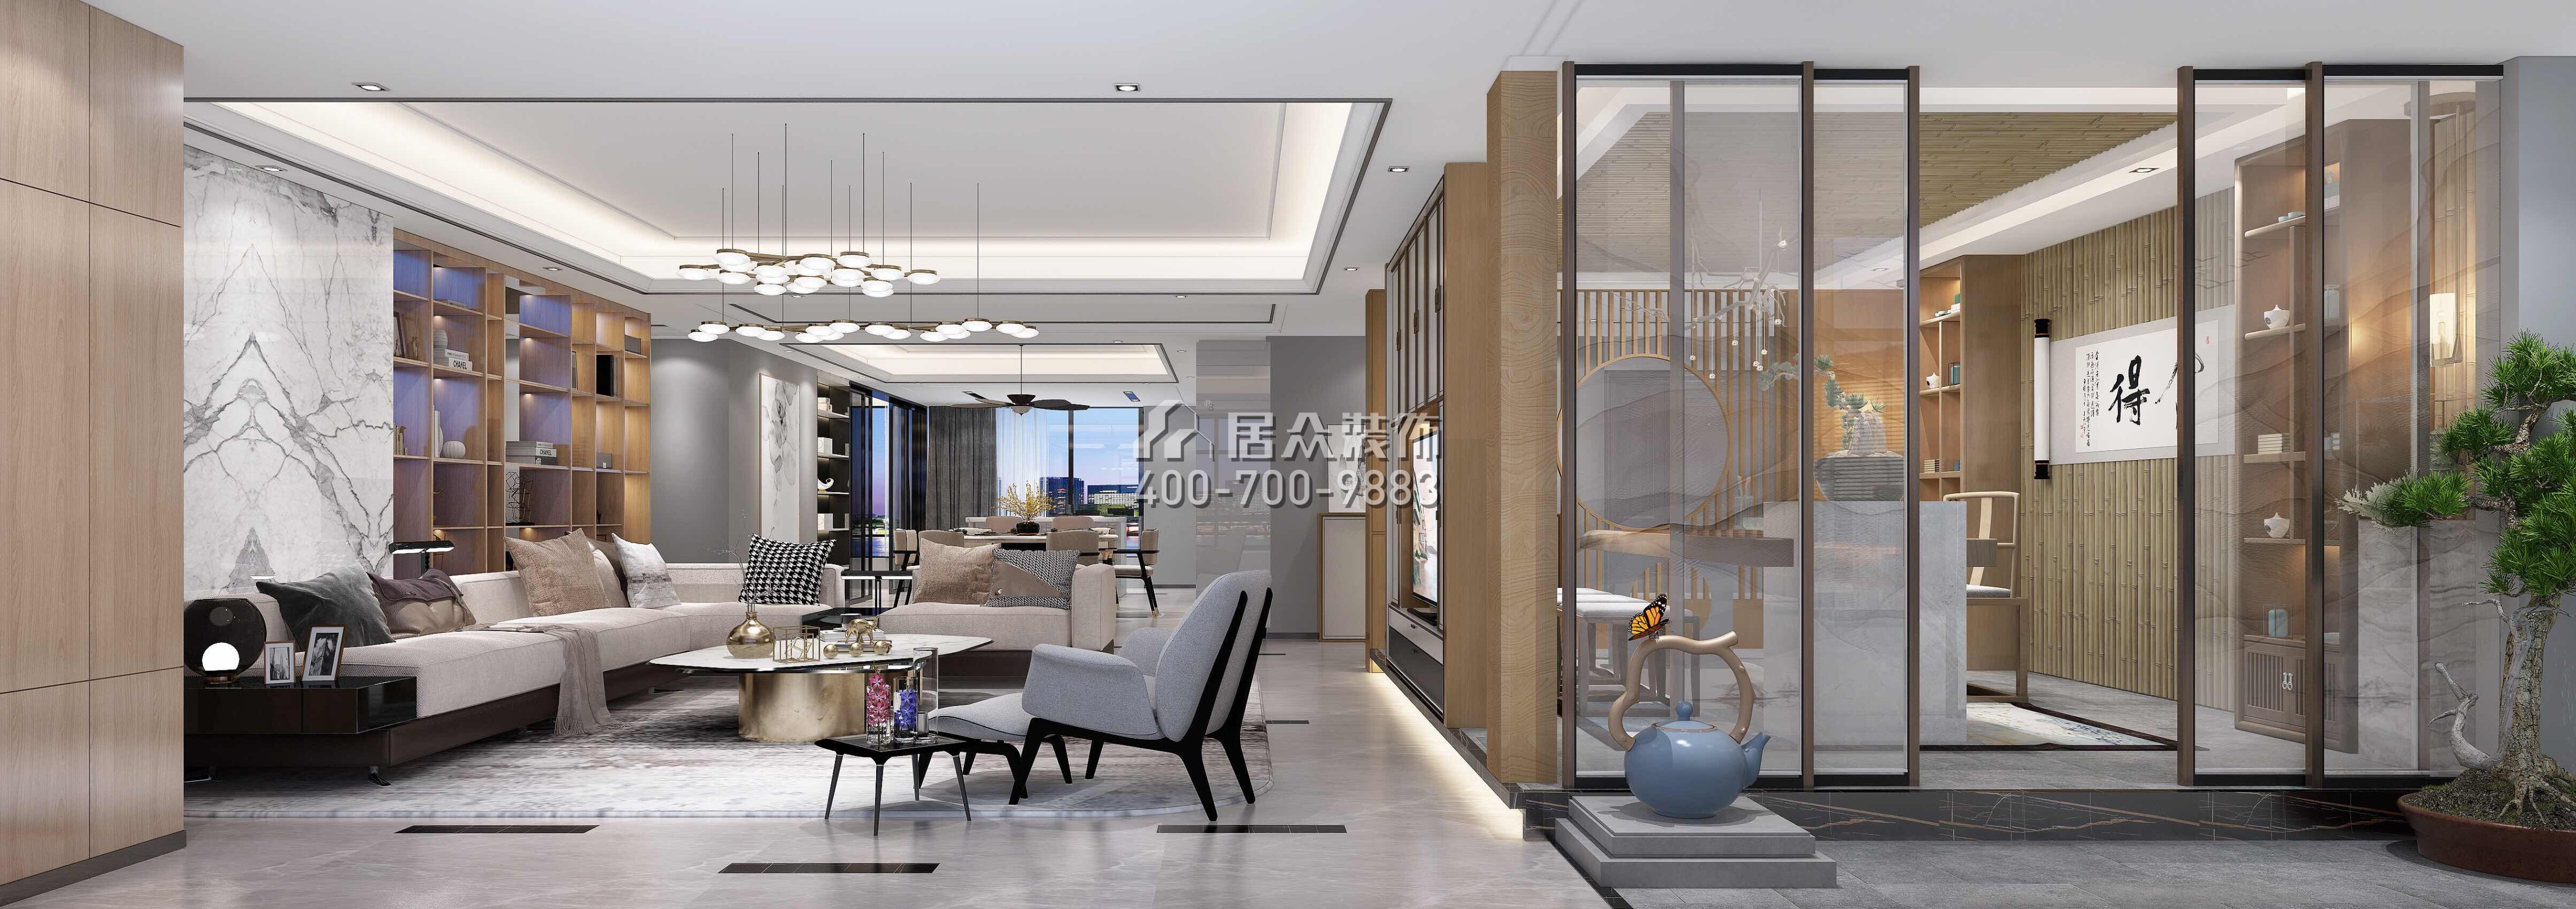 五洲花城330平方米中式风格平层户型客厅装修效果图